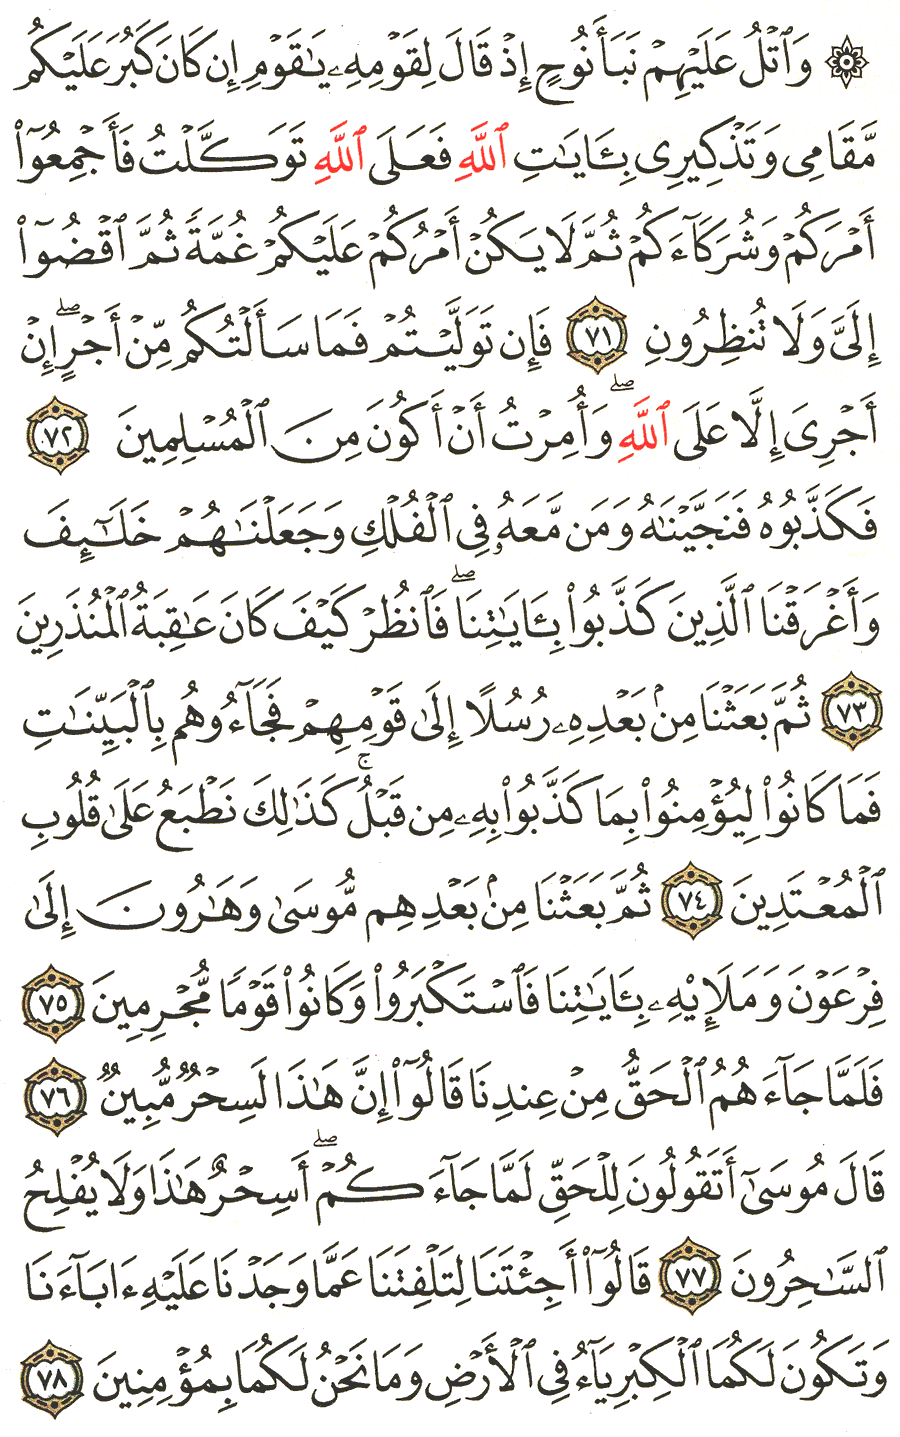 الصفحة 217 من القرآن الكريم